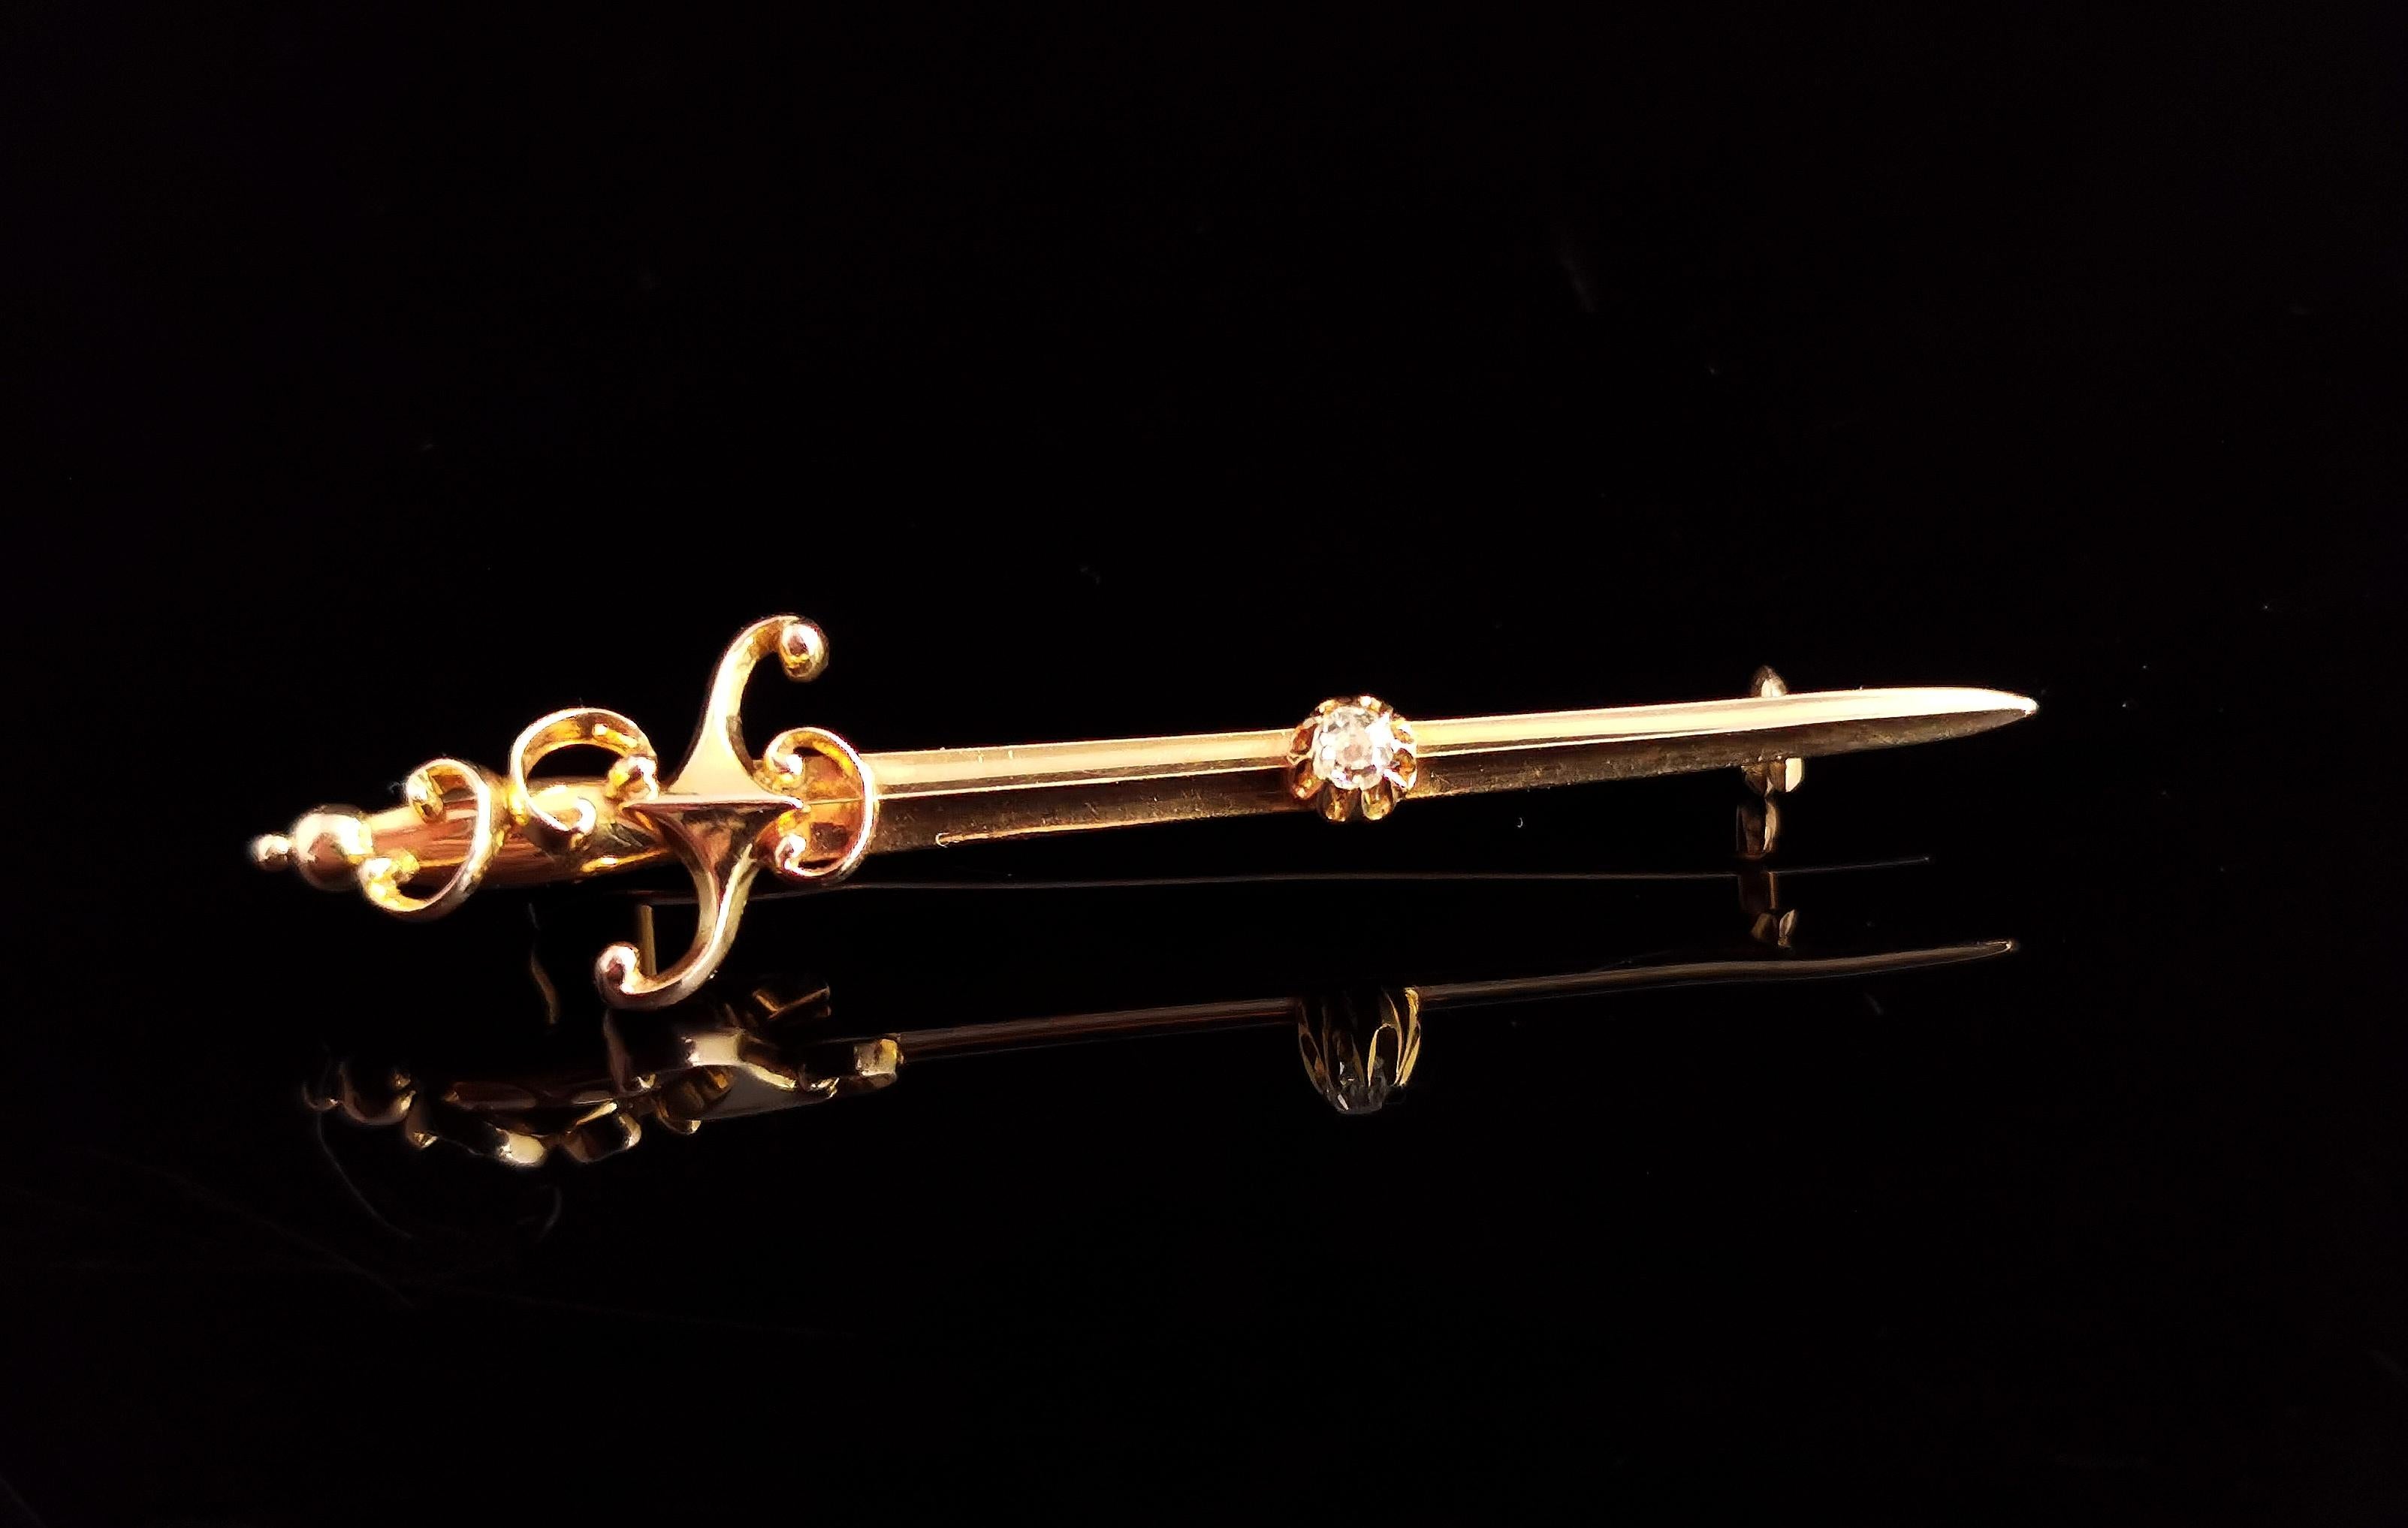 Une magnifique broche d'épée en or jaune de 9kt avec des diamants.

Une pièce magnifiquement conçue avec la plus grande attention aux détails, bien travaillée de la poignée à volutes à la lame striée.

Elle est fabriquée en or jaune 9 carats et est